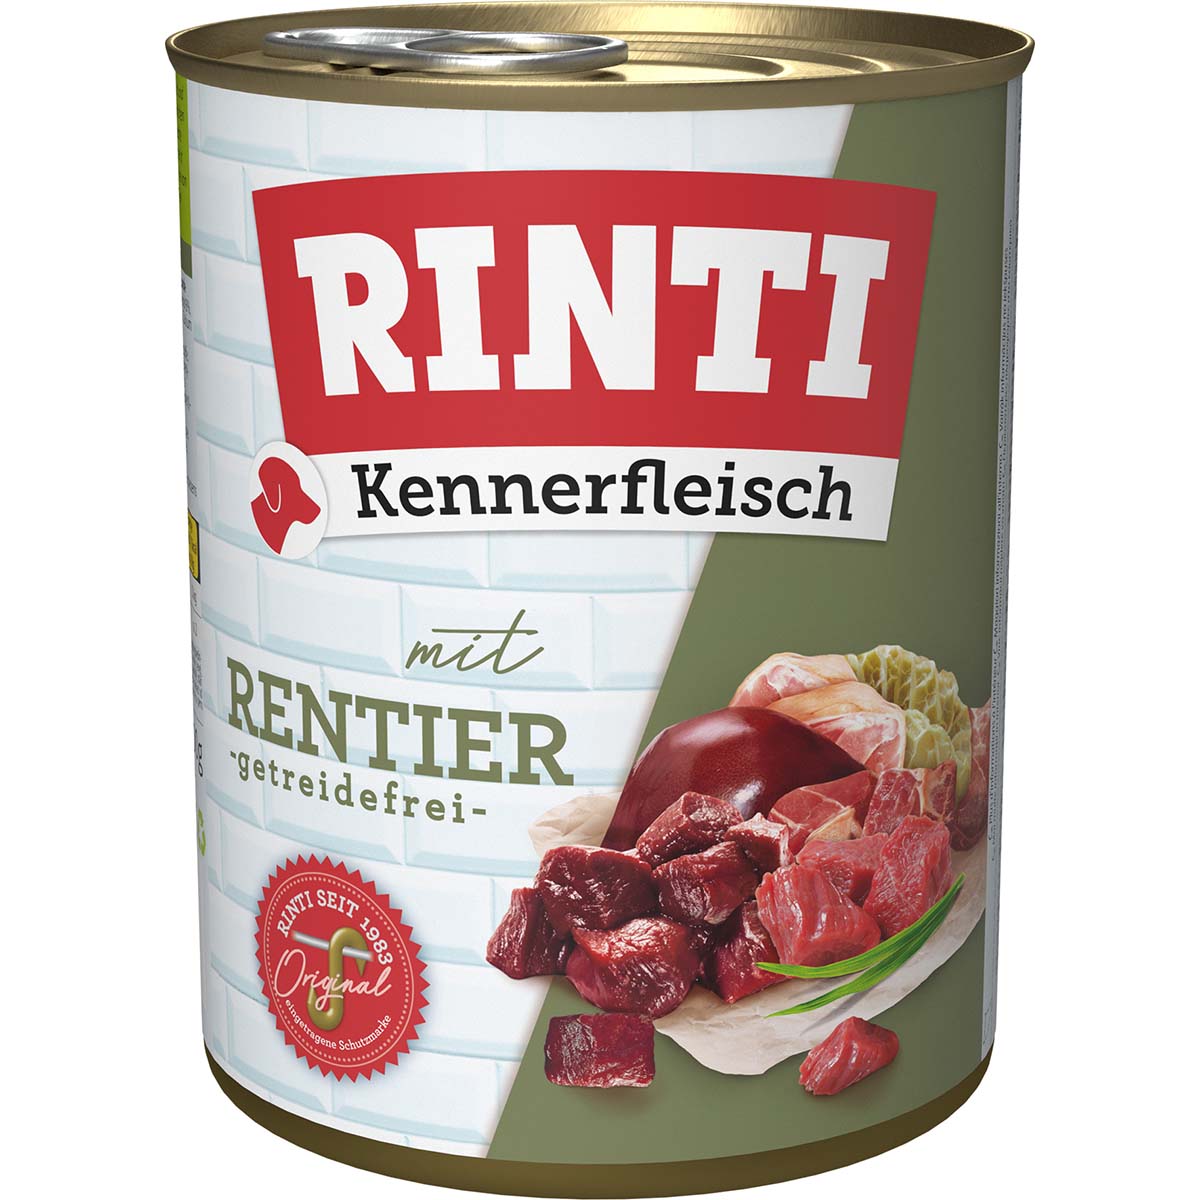 Rinti Kennerfleisch mit Rentier gf 24x800g